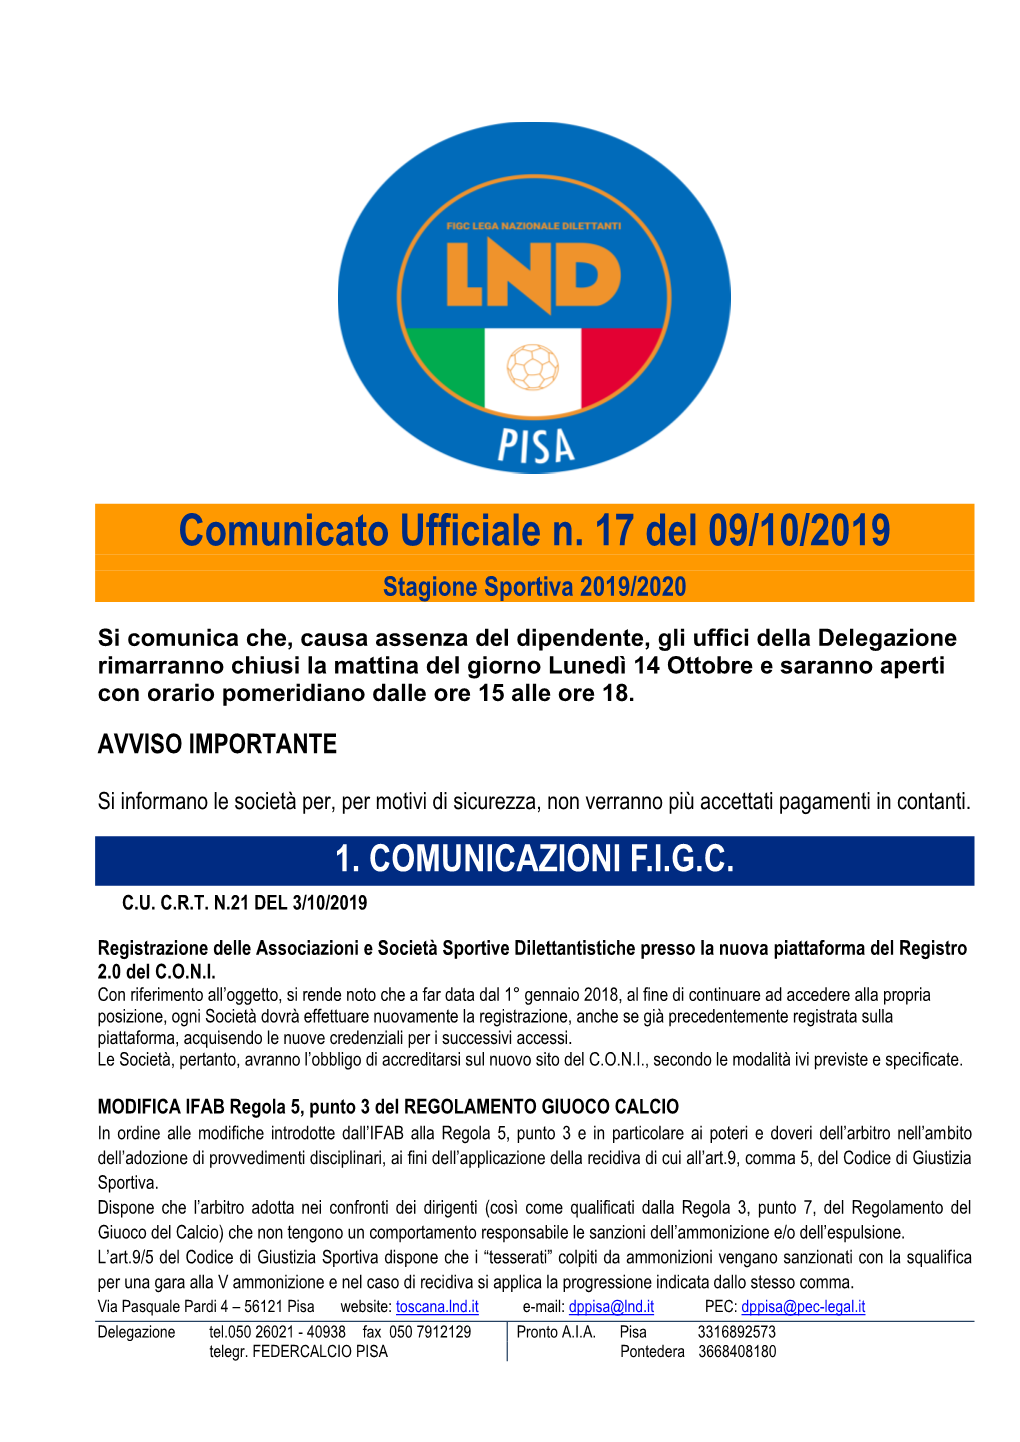 Comunicato Ufficiale N. 17 Del 09/10/2019